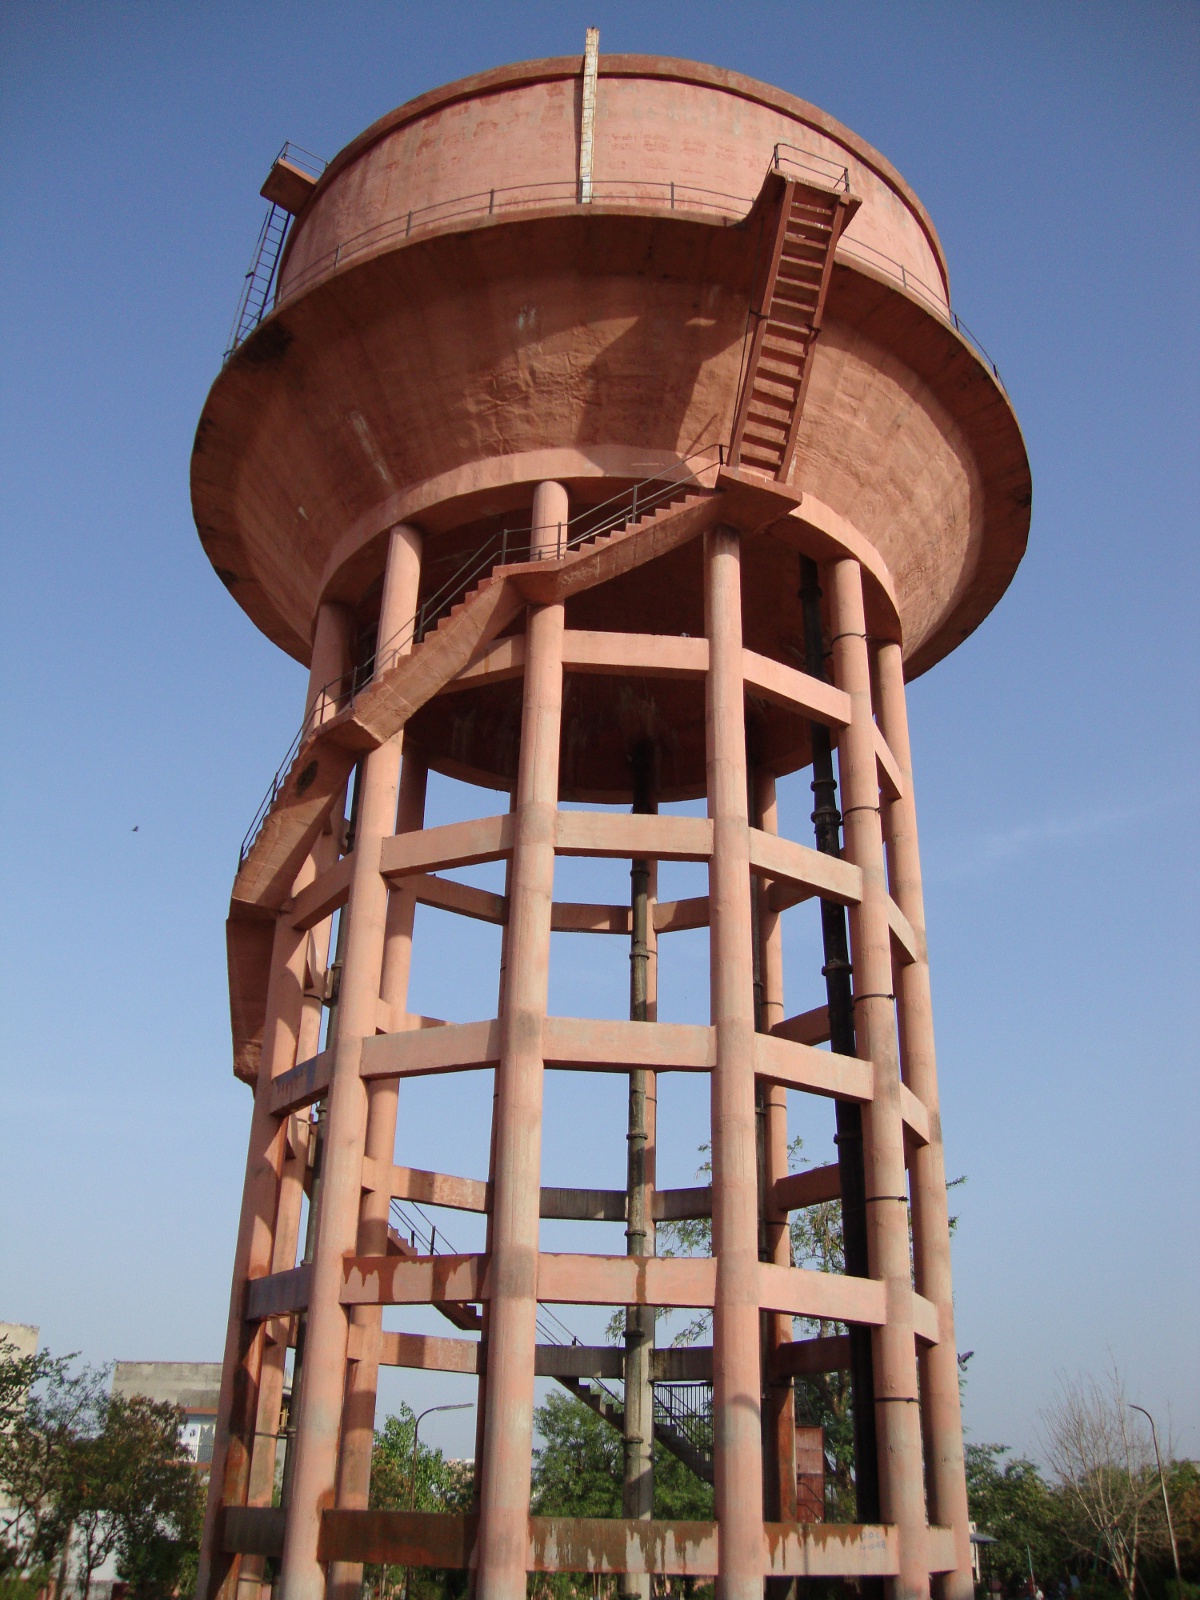 Jawahar Nagar water tower.